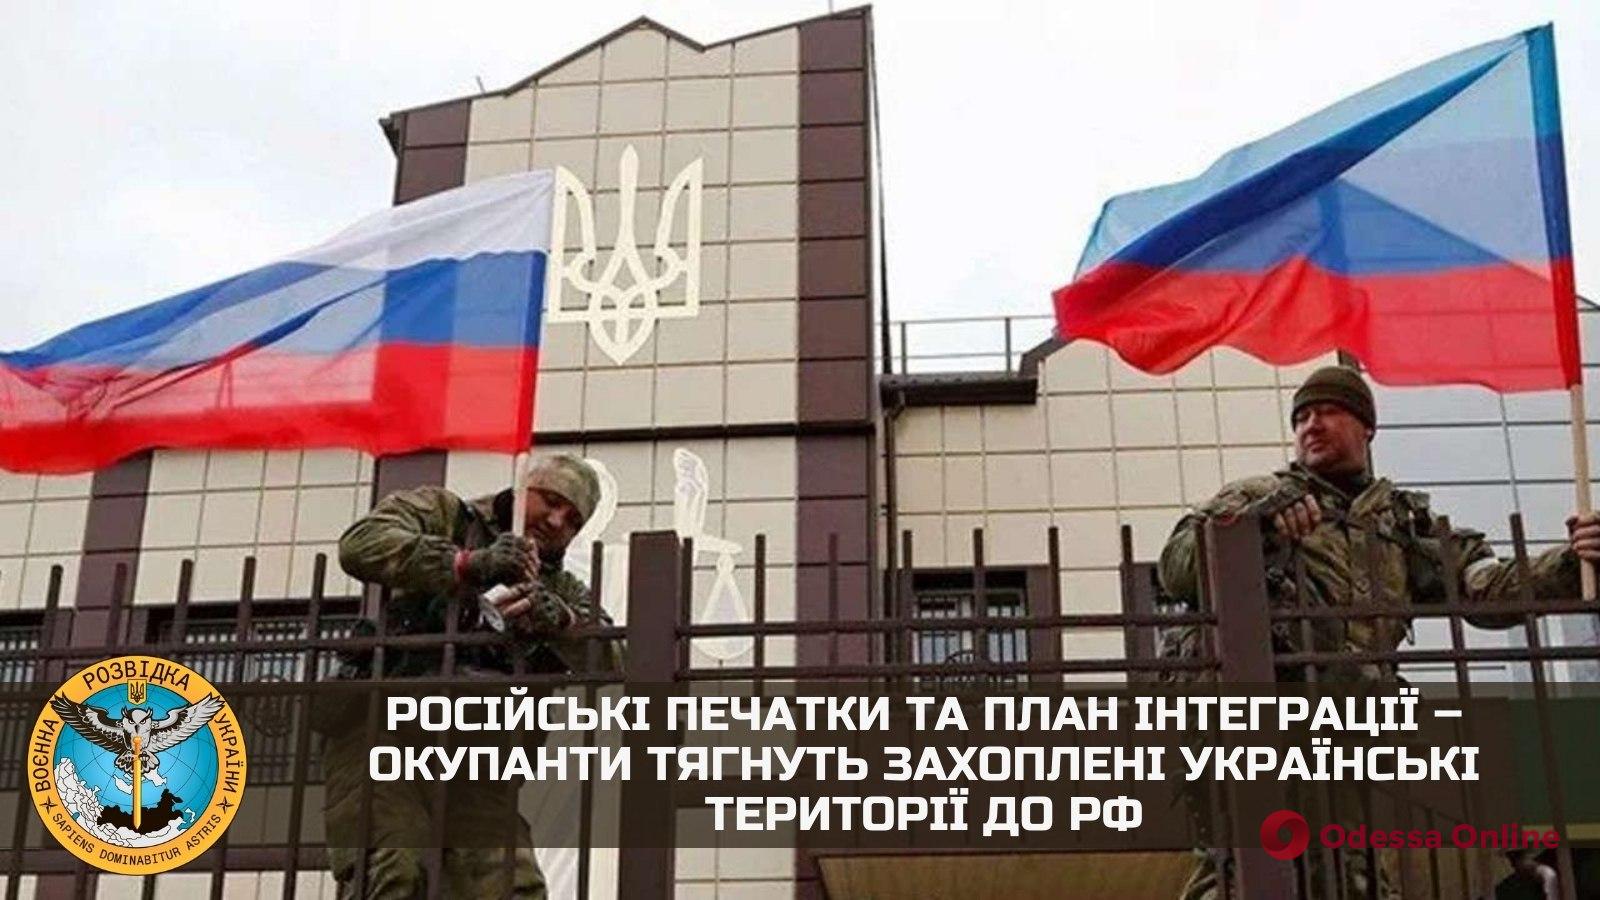 Разведка: россия может включить захваченные территории юга Украины в состав временно оккупированного Крыма